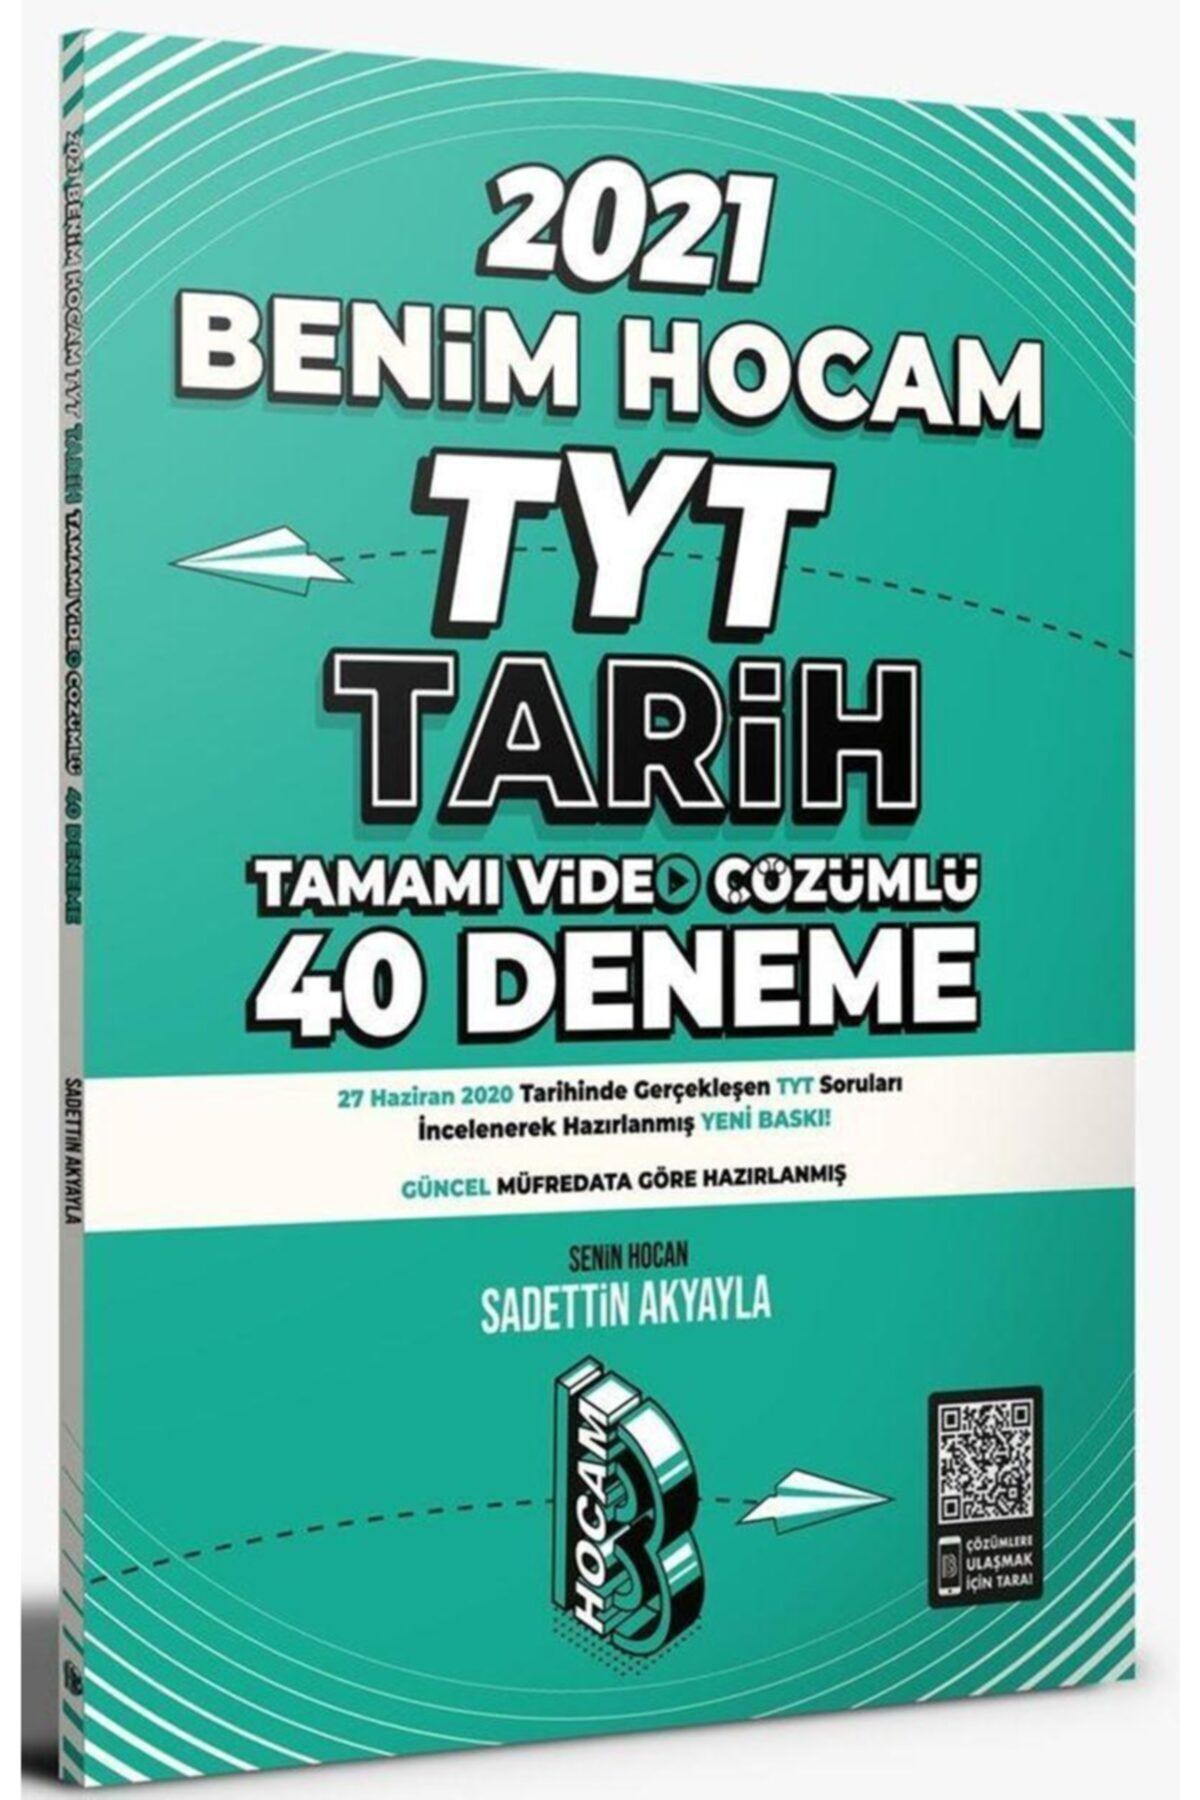 Benim Hocam Yayınları Benim Hocam 2021 Tyt Tarih Tamamı Video Çözümlü 40 Deneme Sınavı